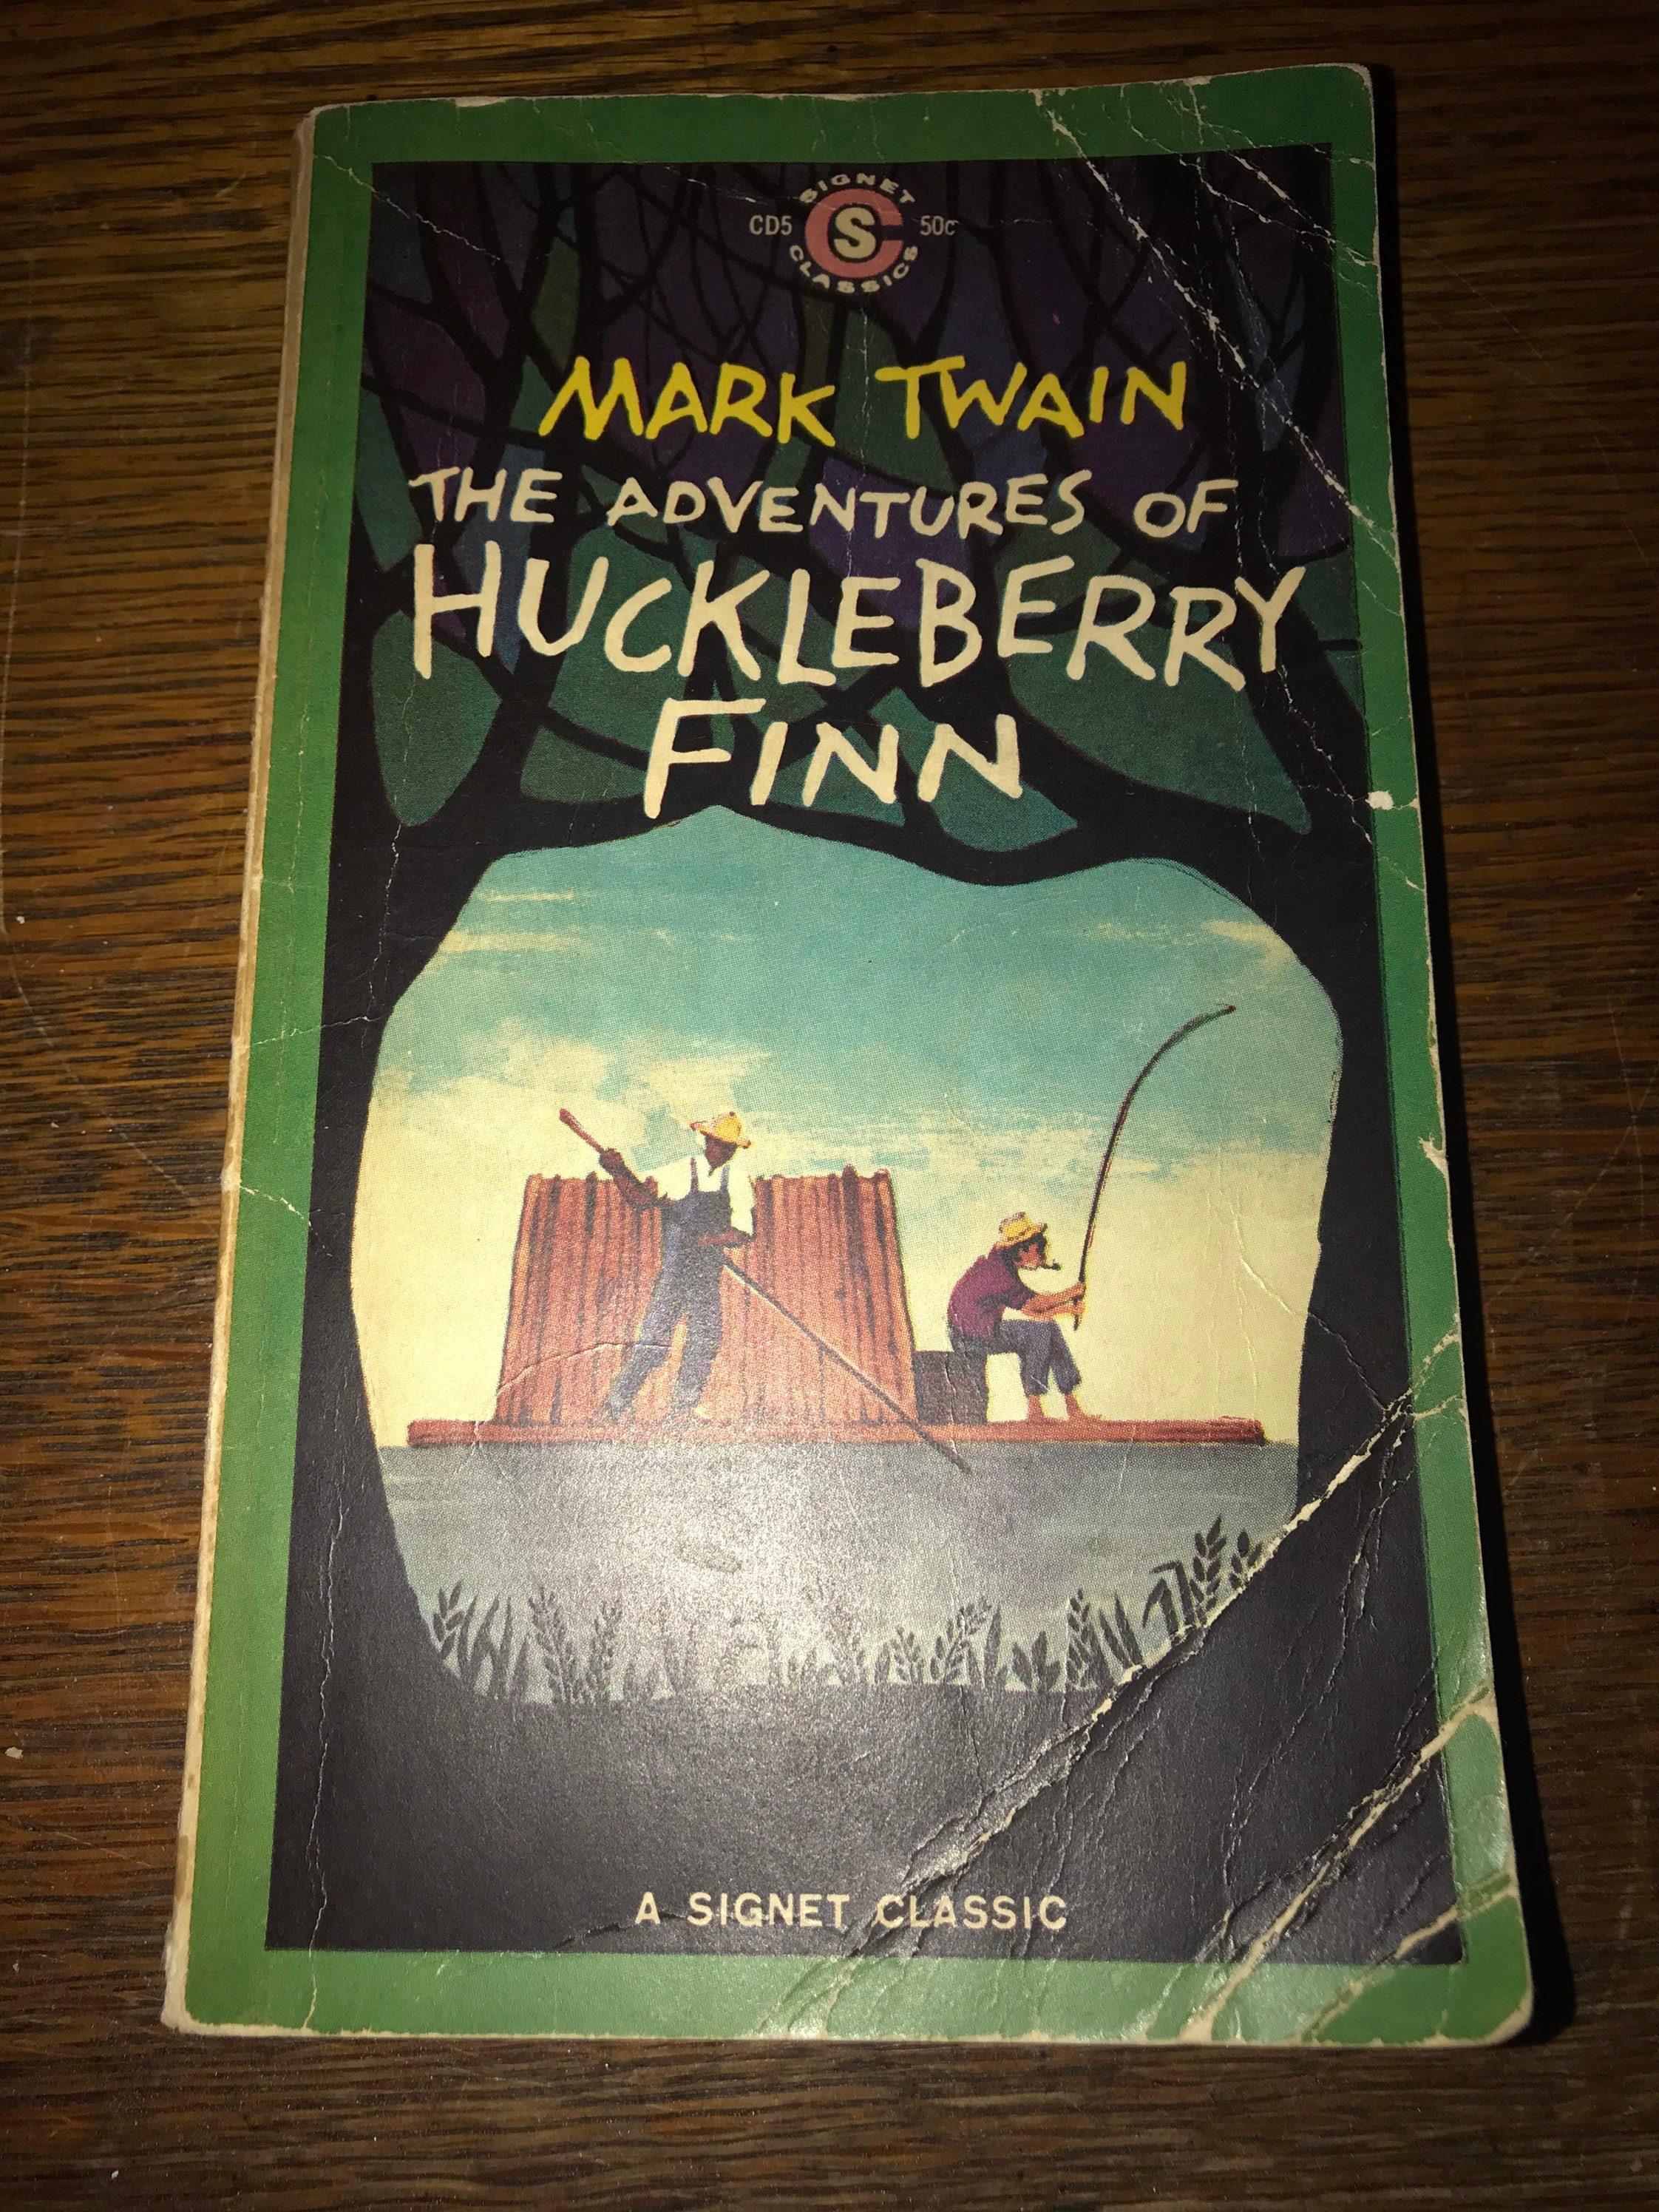 1963 Mark Twain Book “The Adventures of Hucklebarry Finn” Mark Twain ...